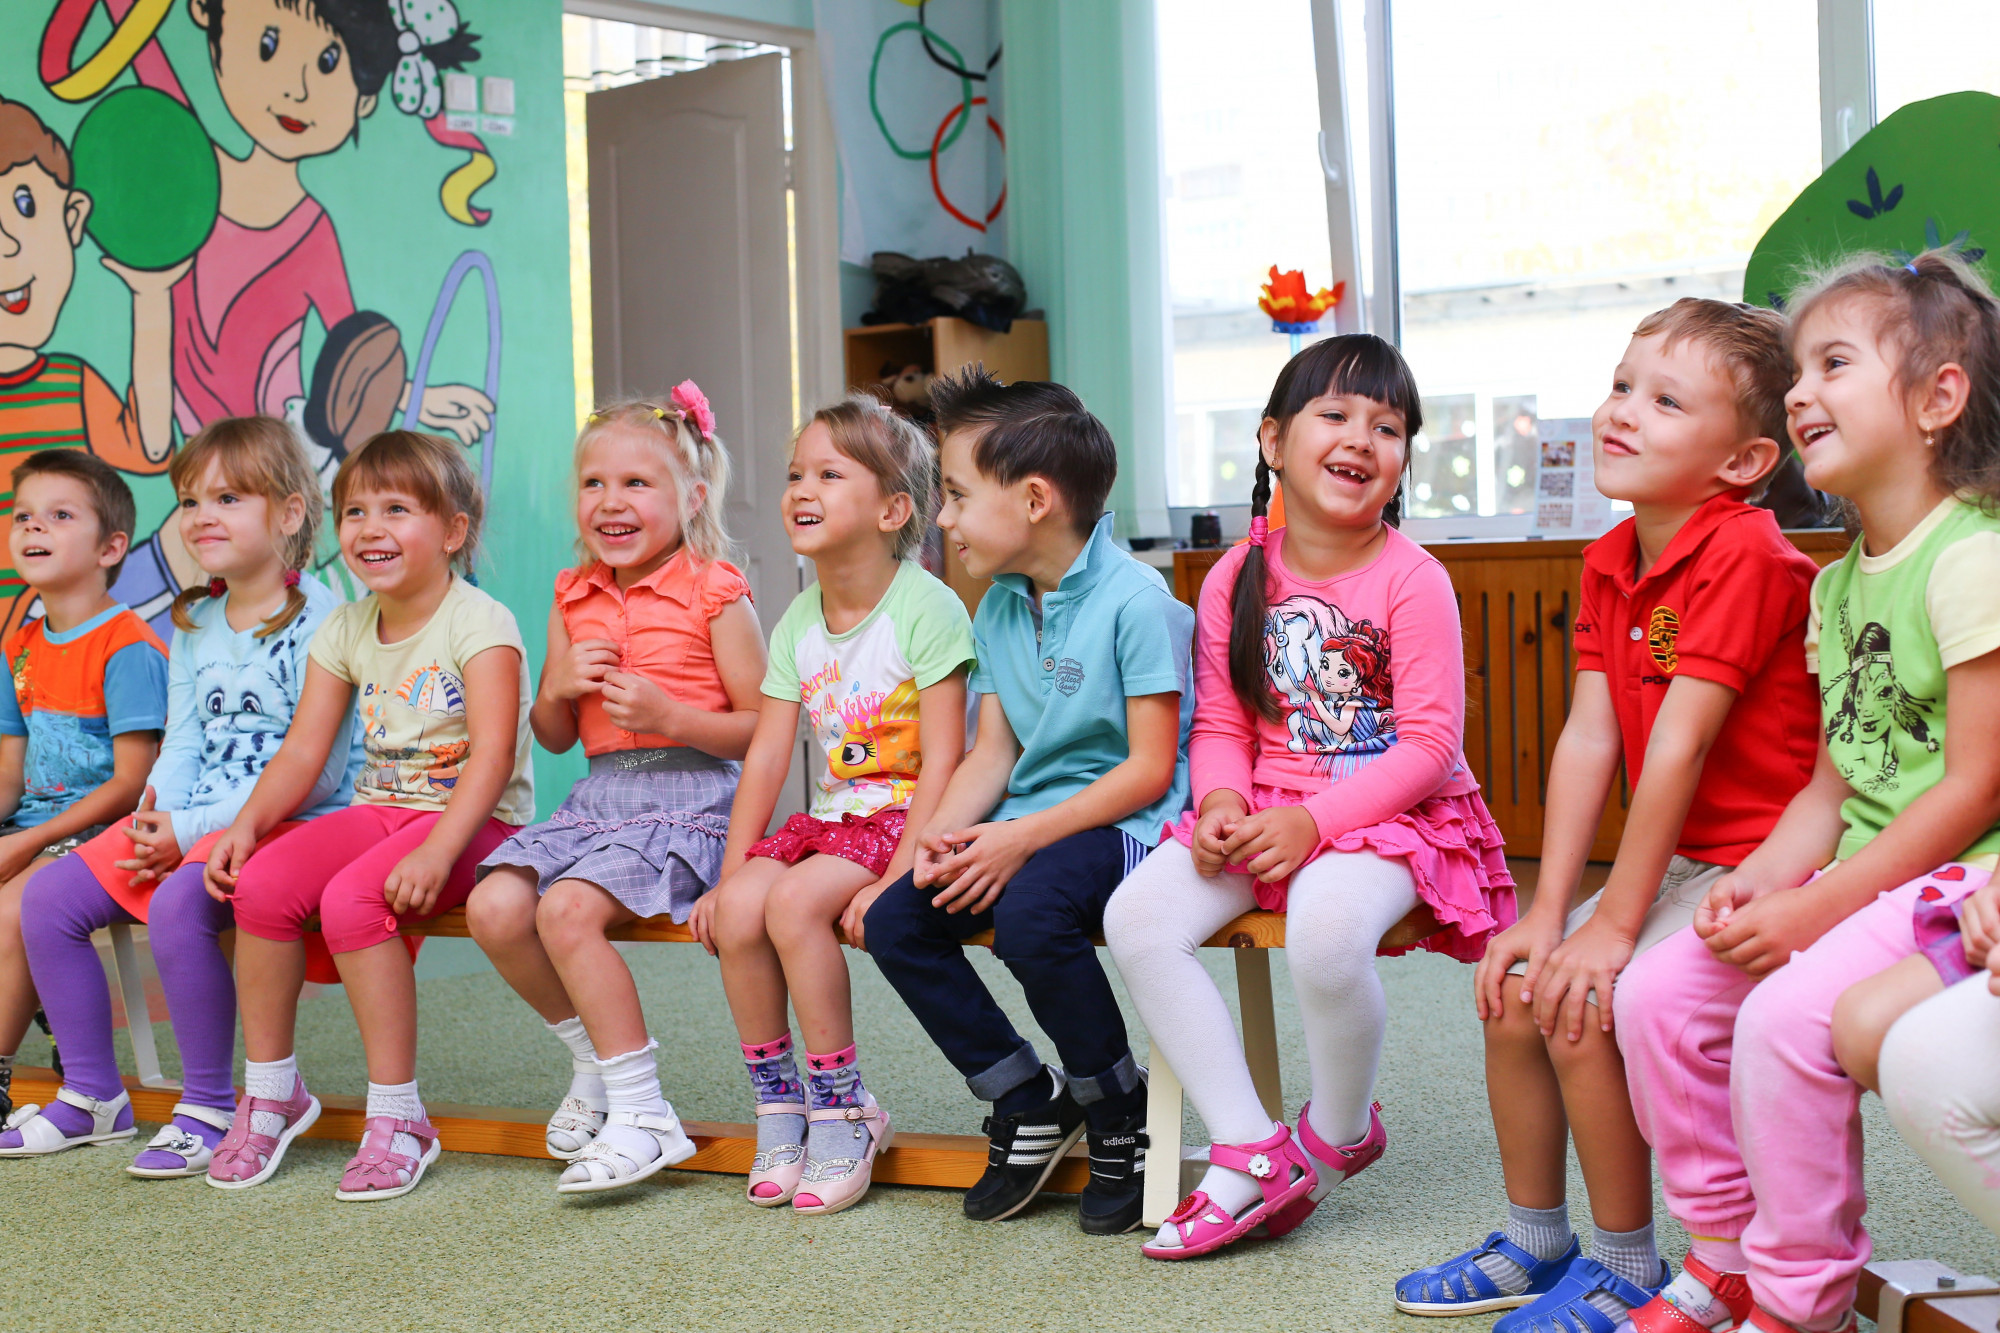 Az ukrajnai menekült gyerekeknek nem felzárkóztatásra, hanem pozitív élményekre lenne szükségük az iskolában